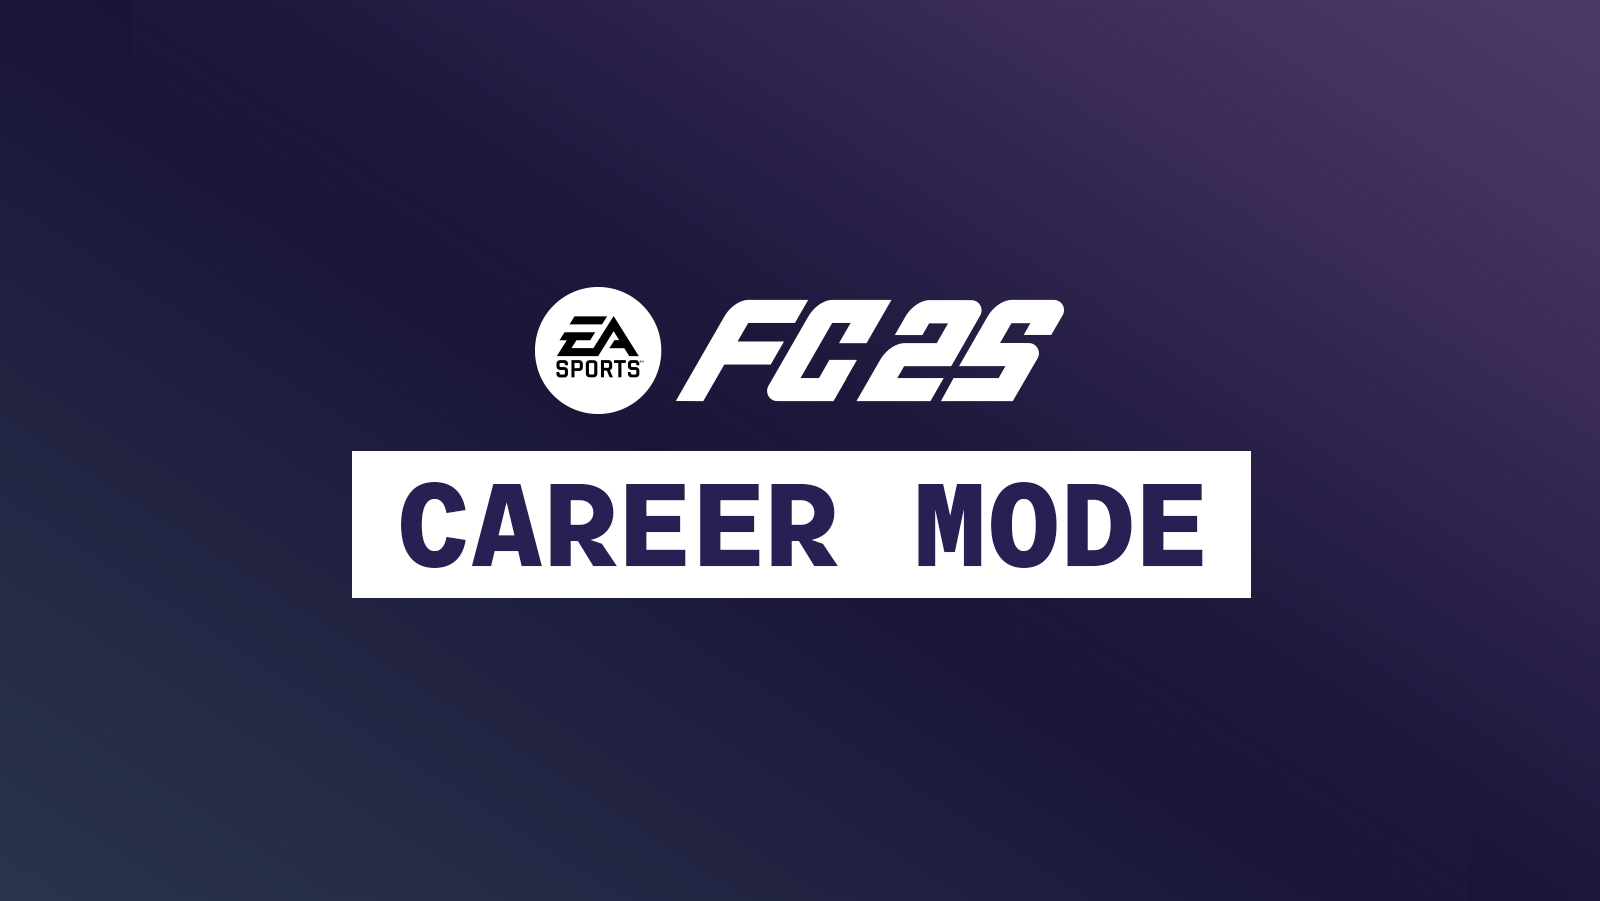 EA Sports FC 25 Career Mode